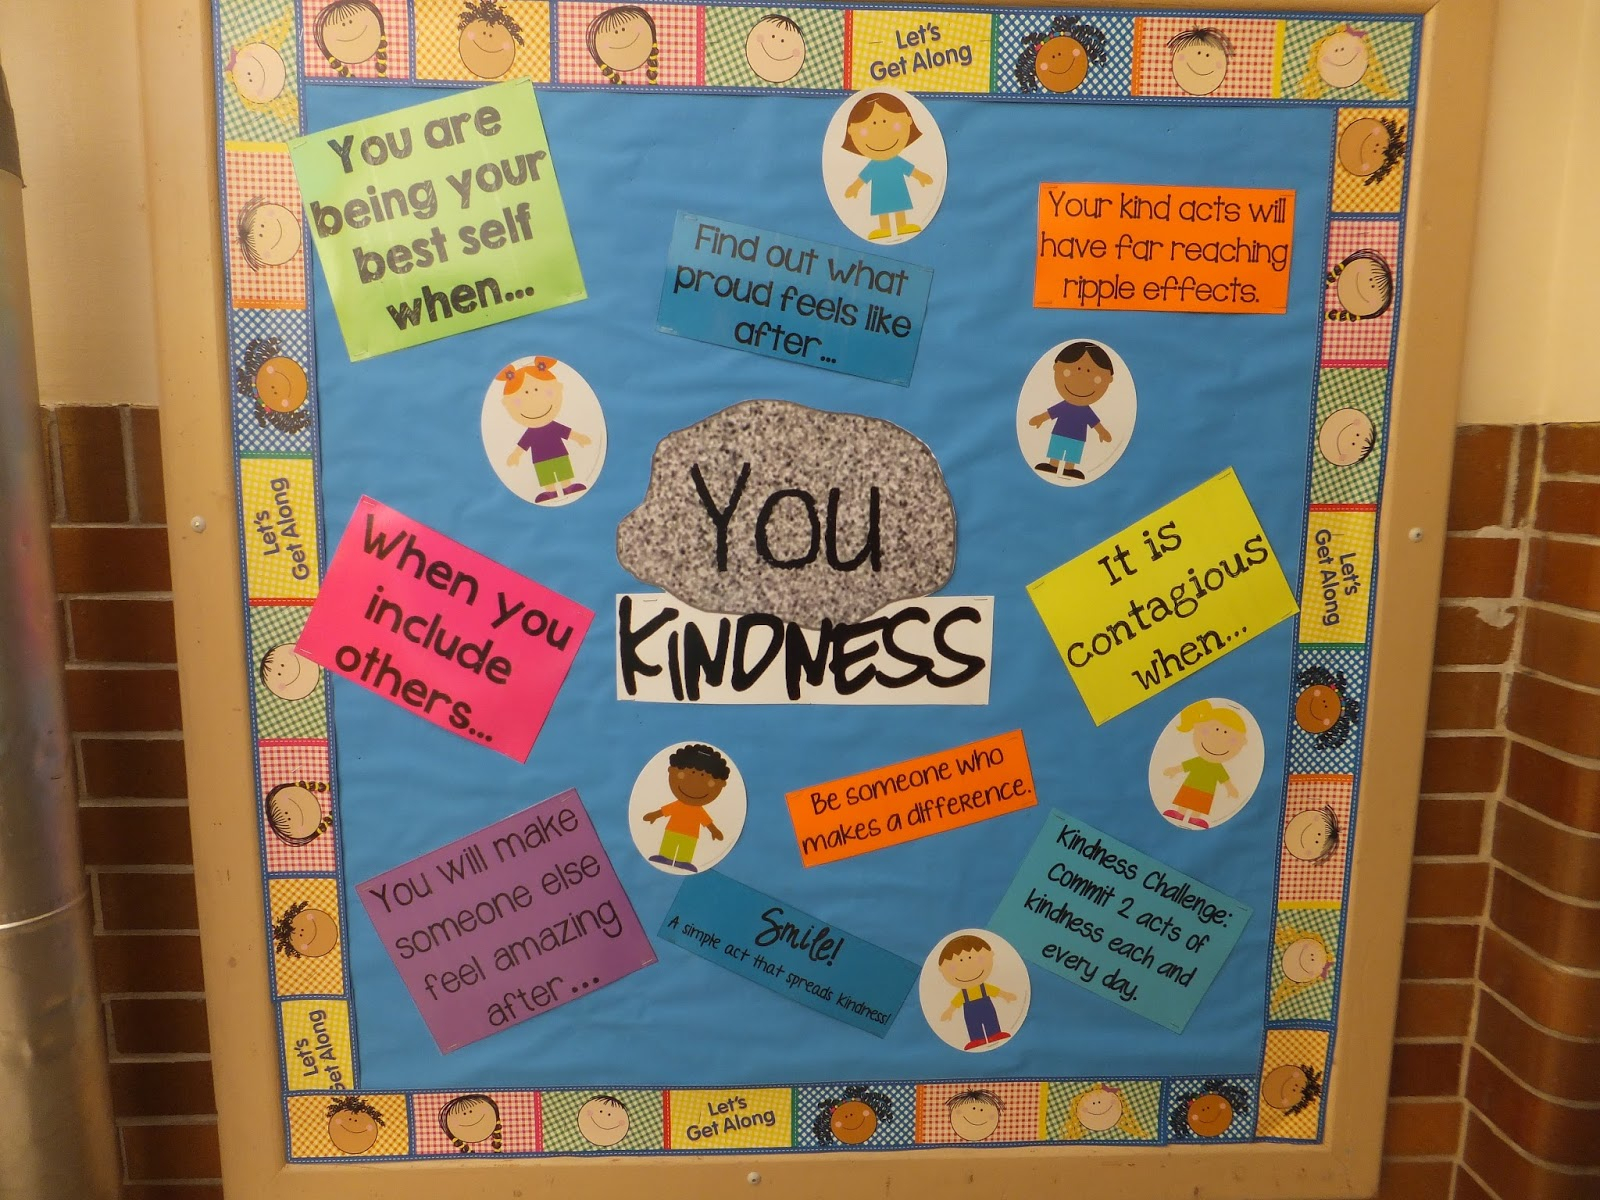 10 Lovely Bulletin Board Ideas For Elementary School entirely elementaryschool counseling you rock kindness bulletin 1 2022